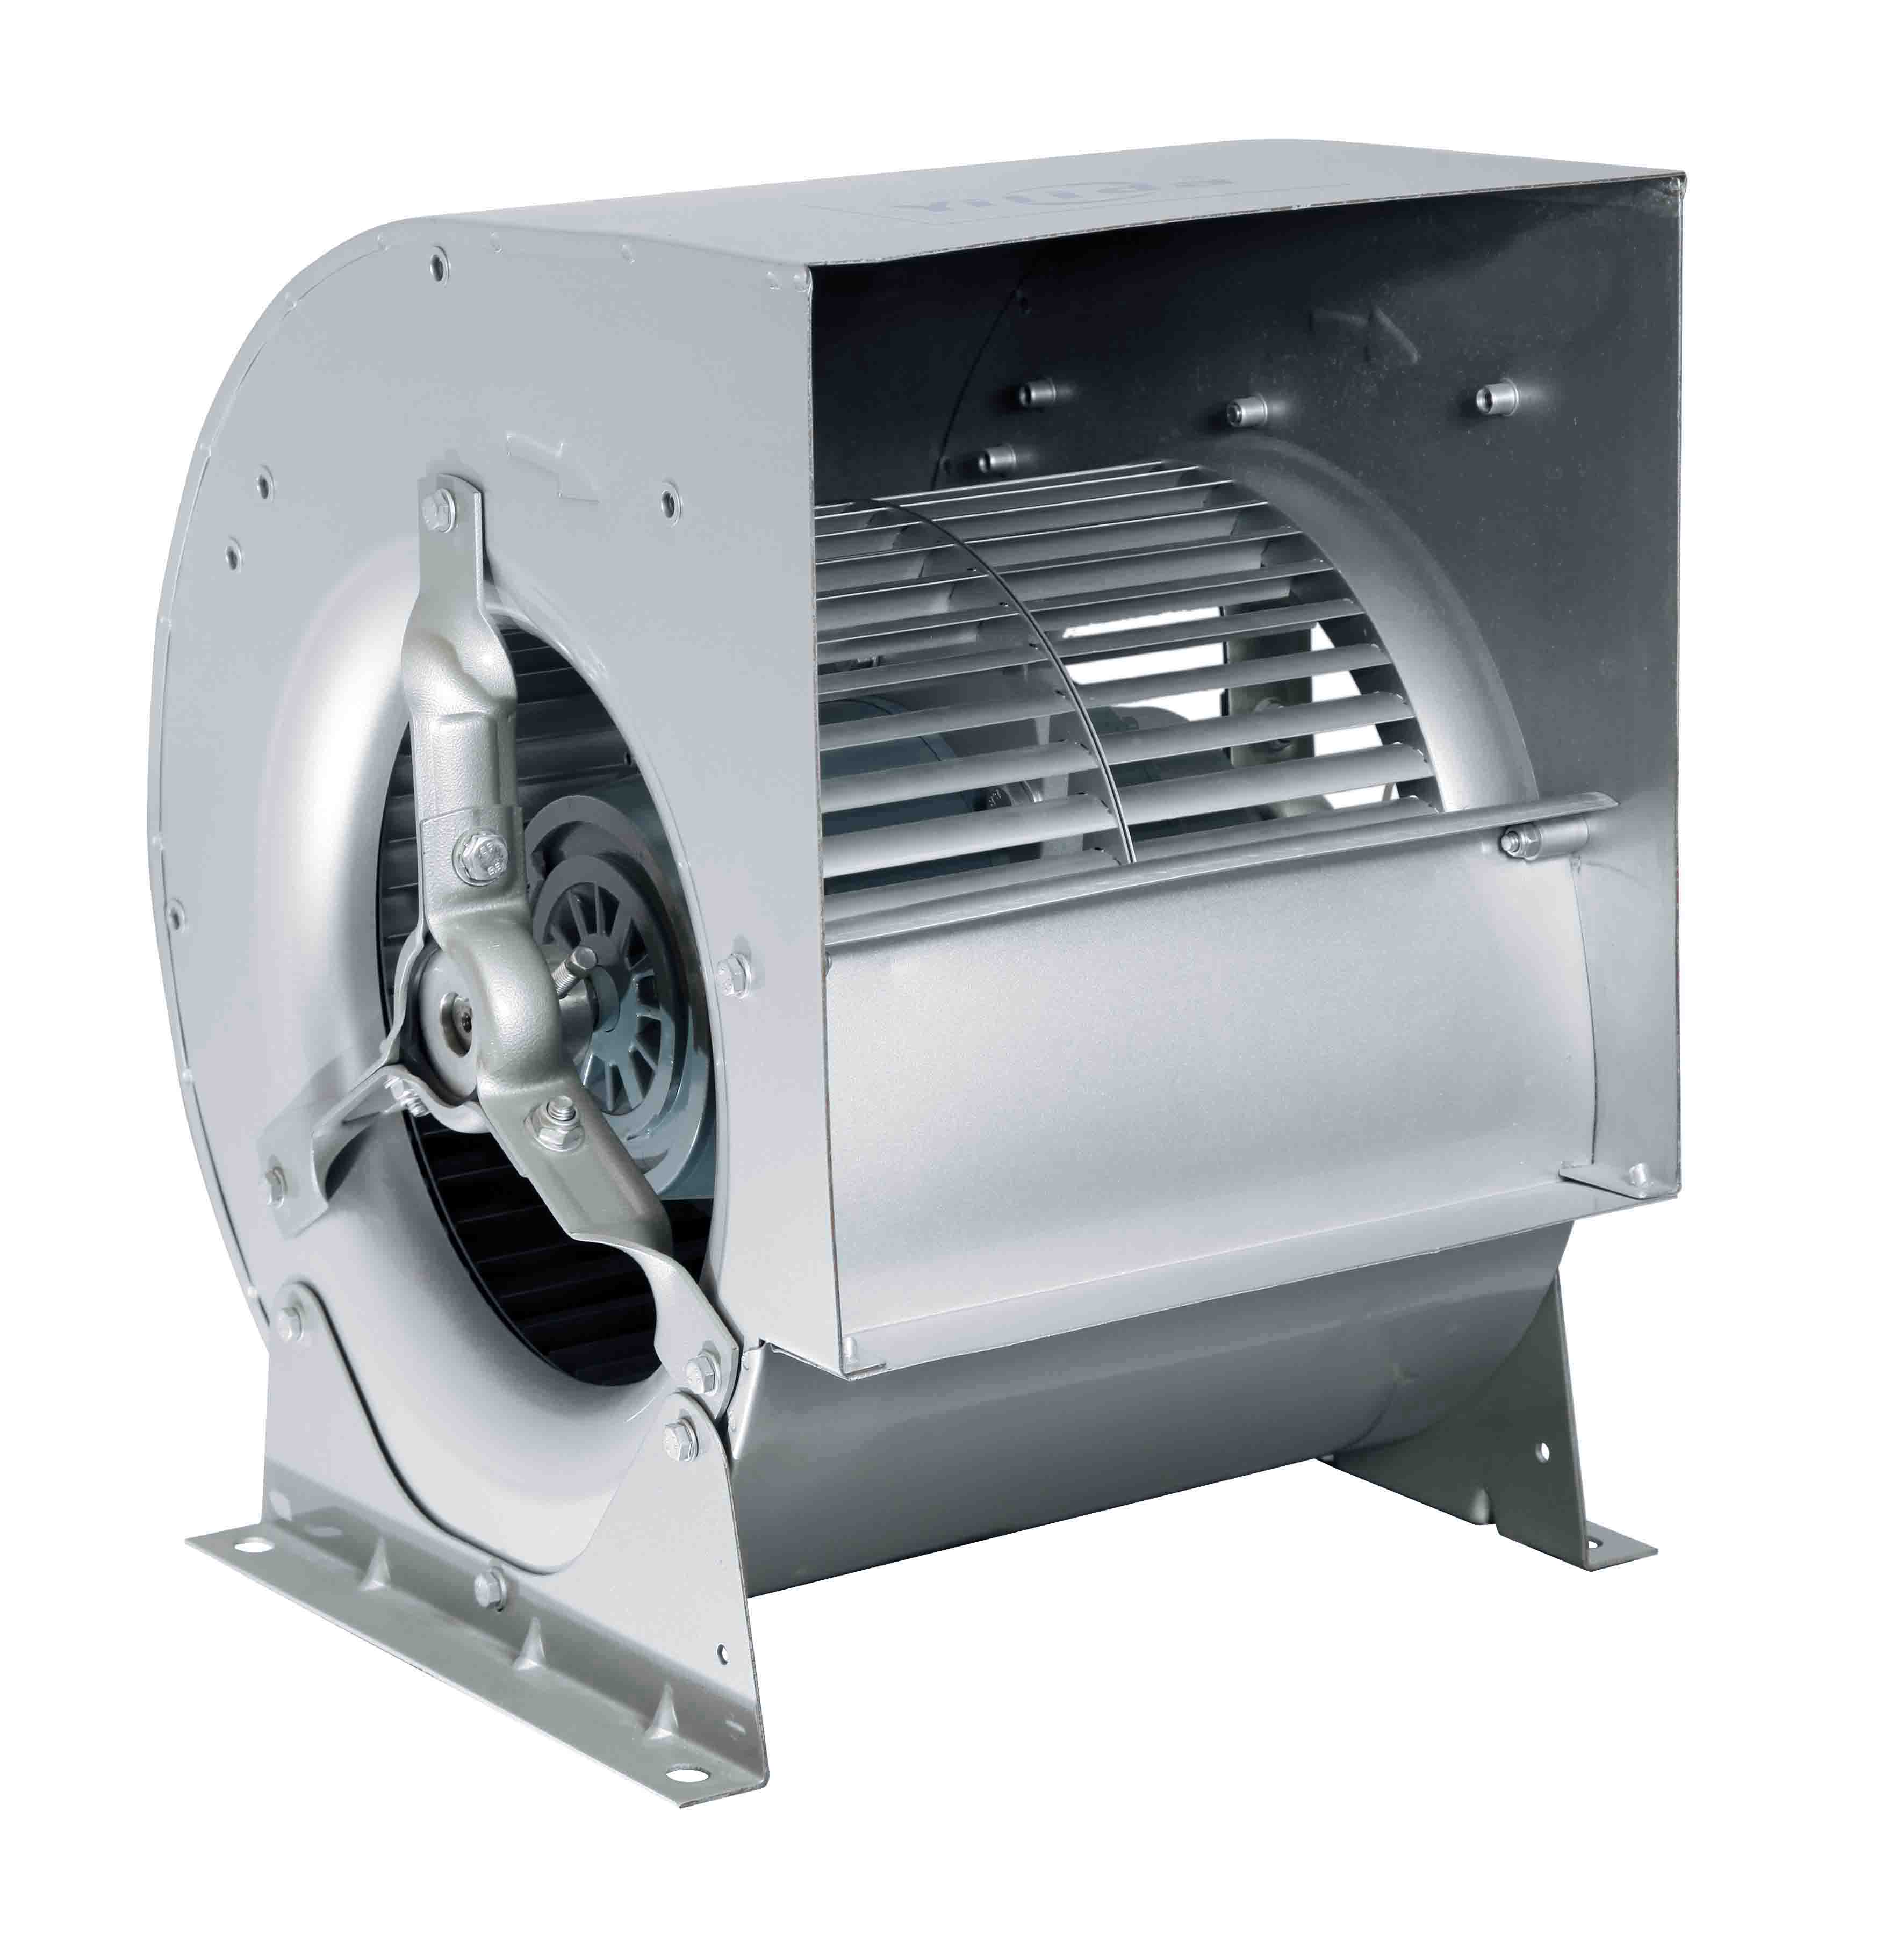 Ventilator i dyfishtë me hyrje centrifugale me cilësi të lartë